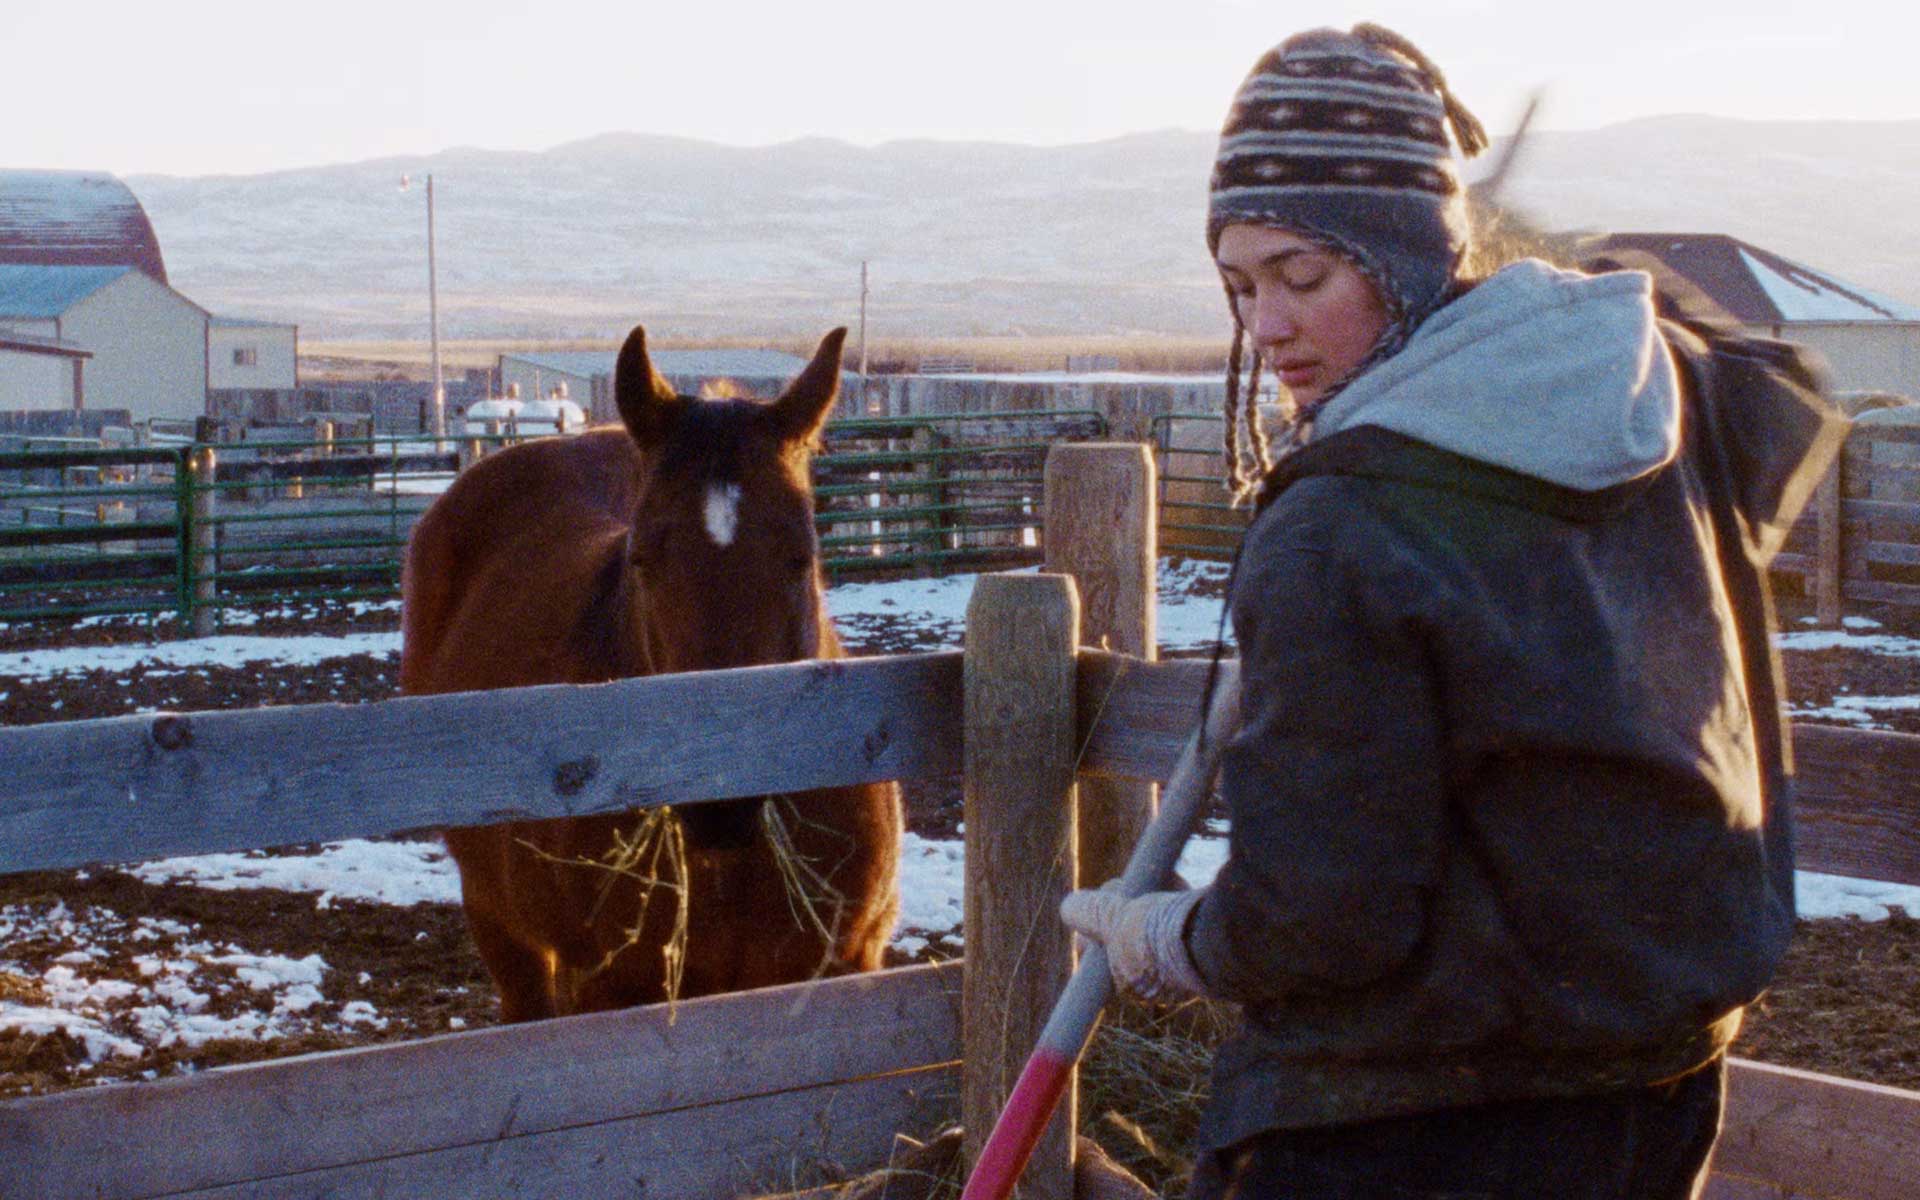 لیلی گلداستون در کنار یک اسب در فیلم Certain Women، محصول سال ۲۰۱۶ میلادی